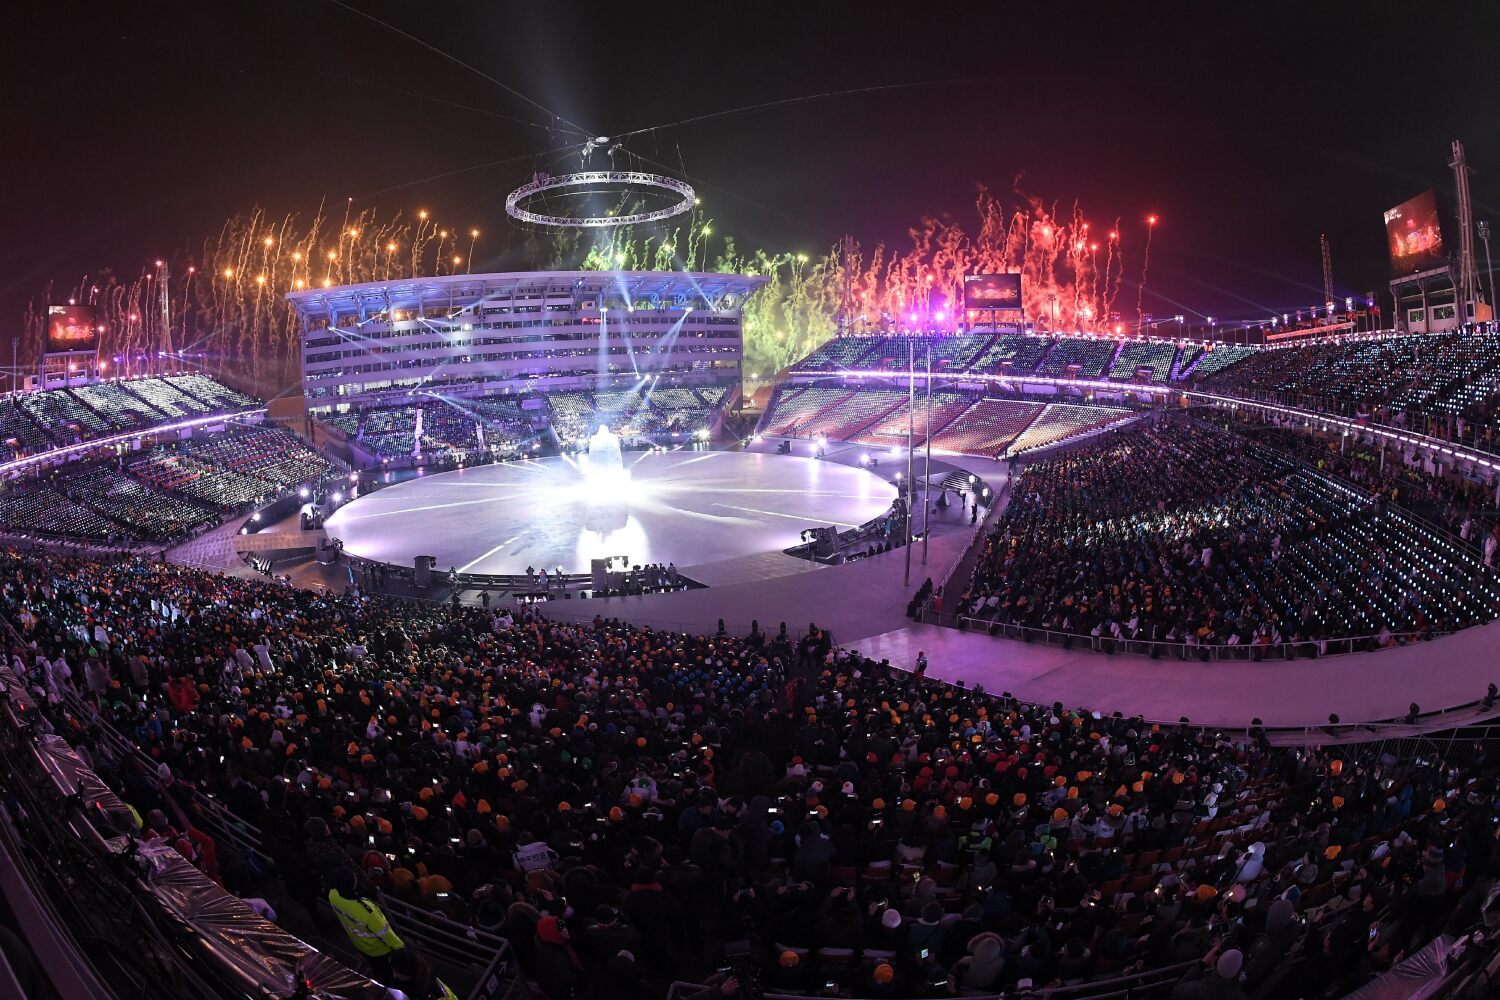 평창 겨울올림픽 개최